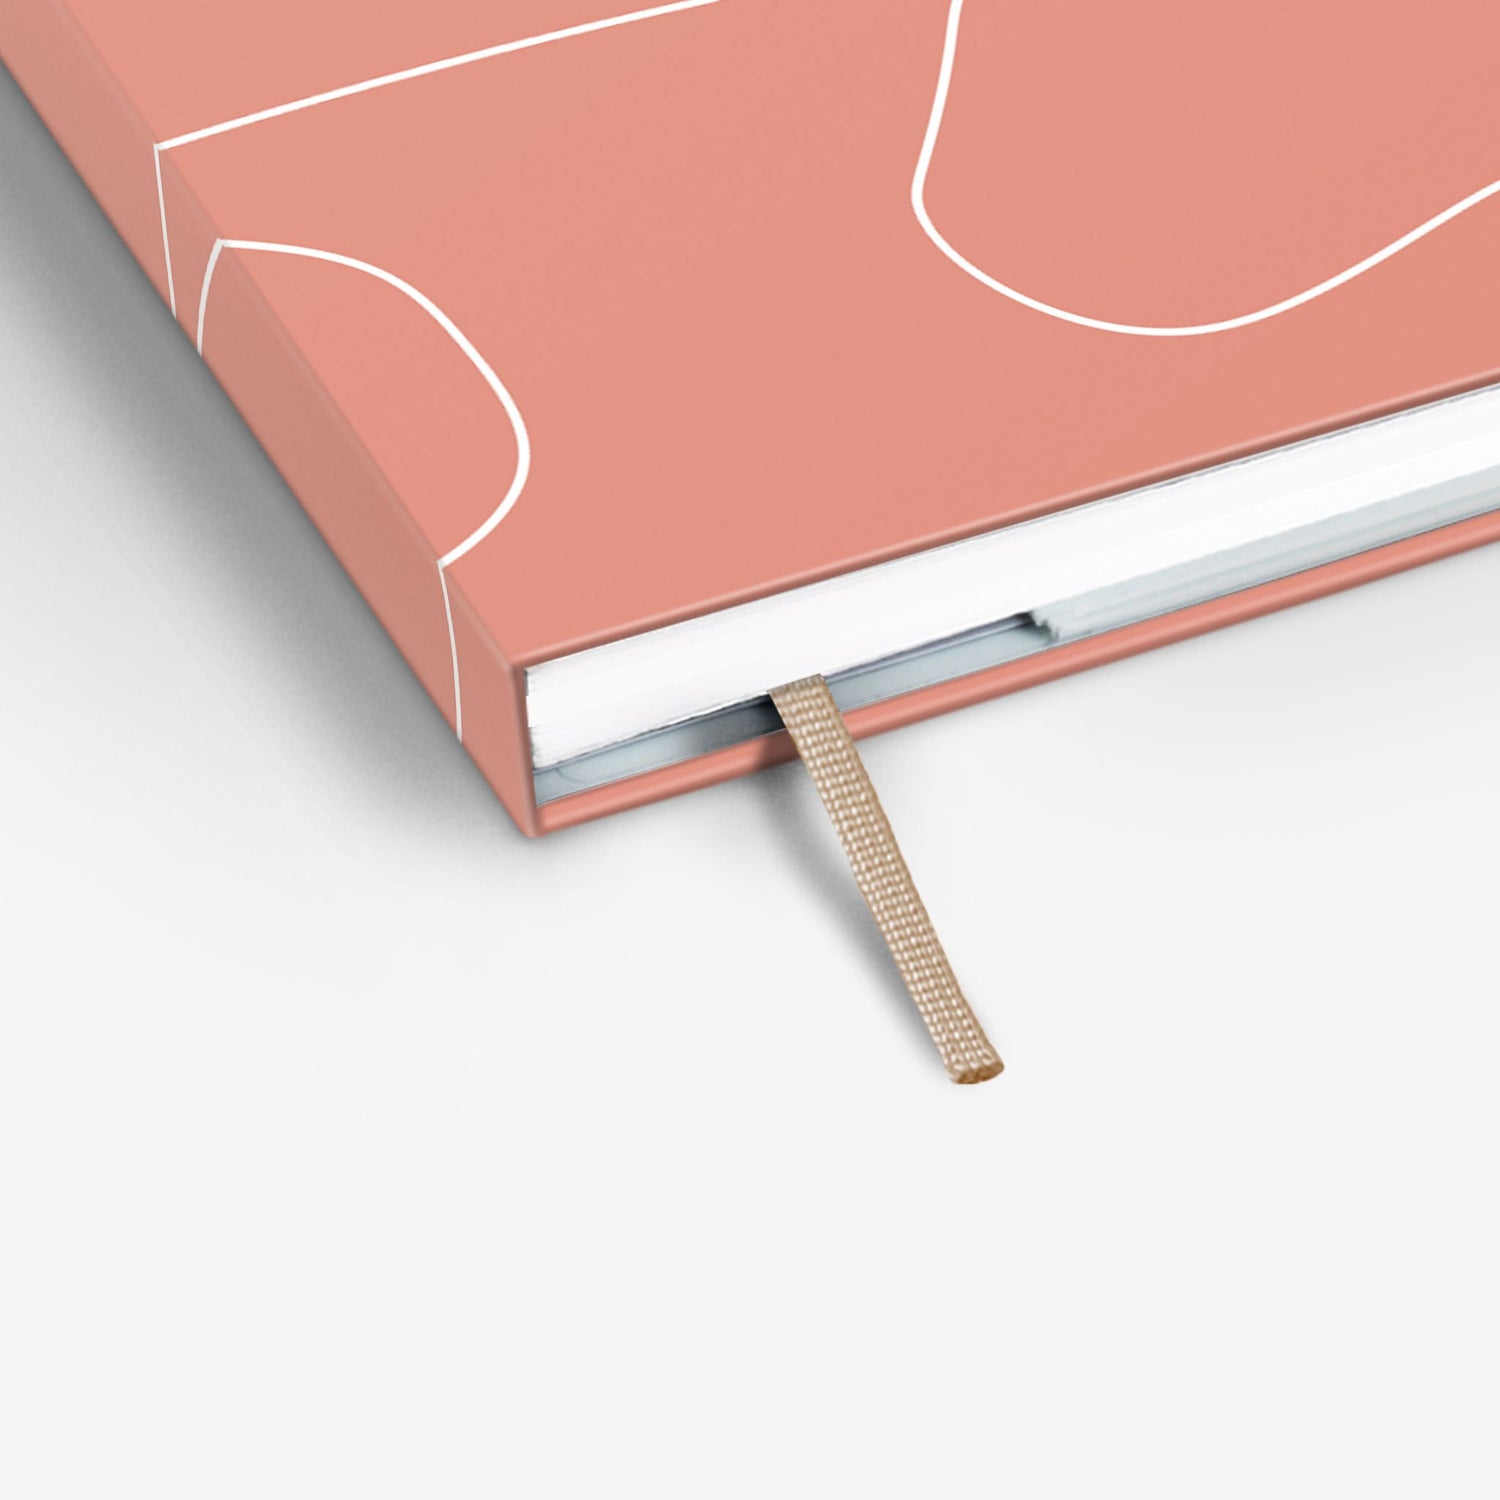 Pink Clay Threadbound Sketchbook